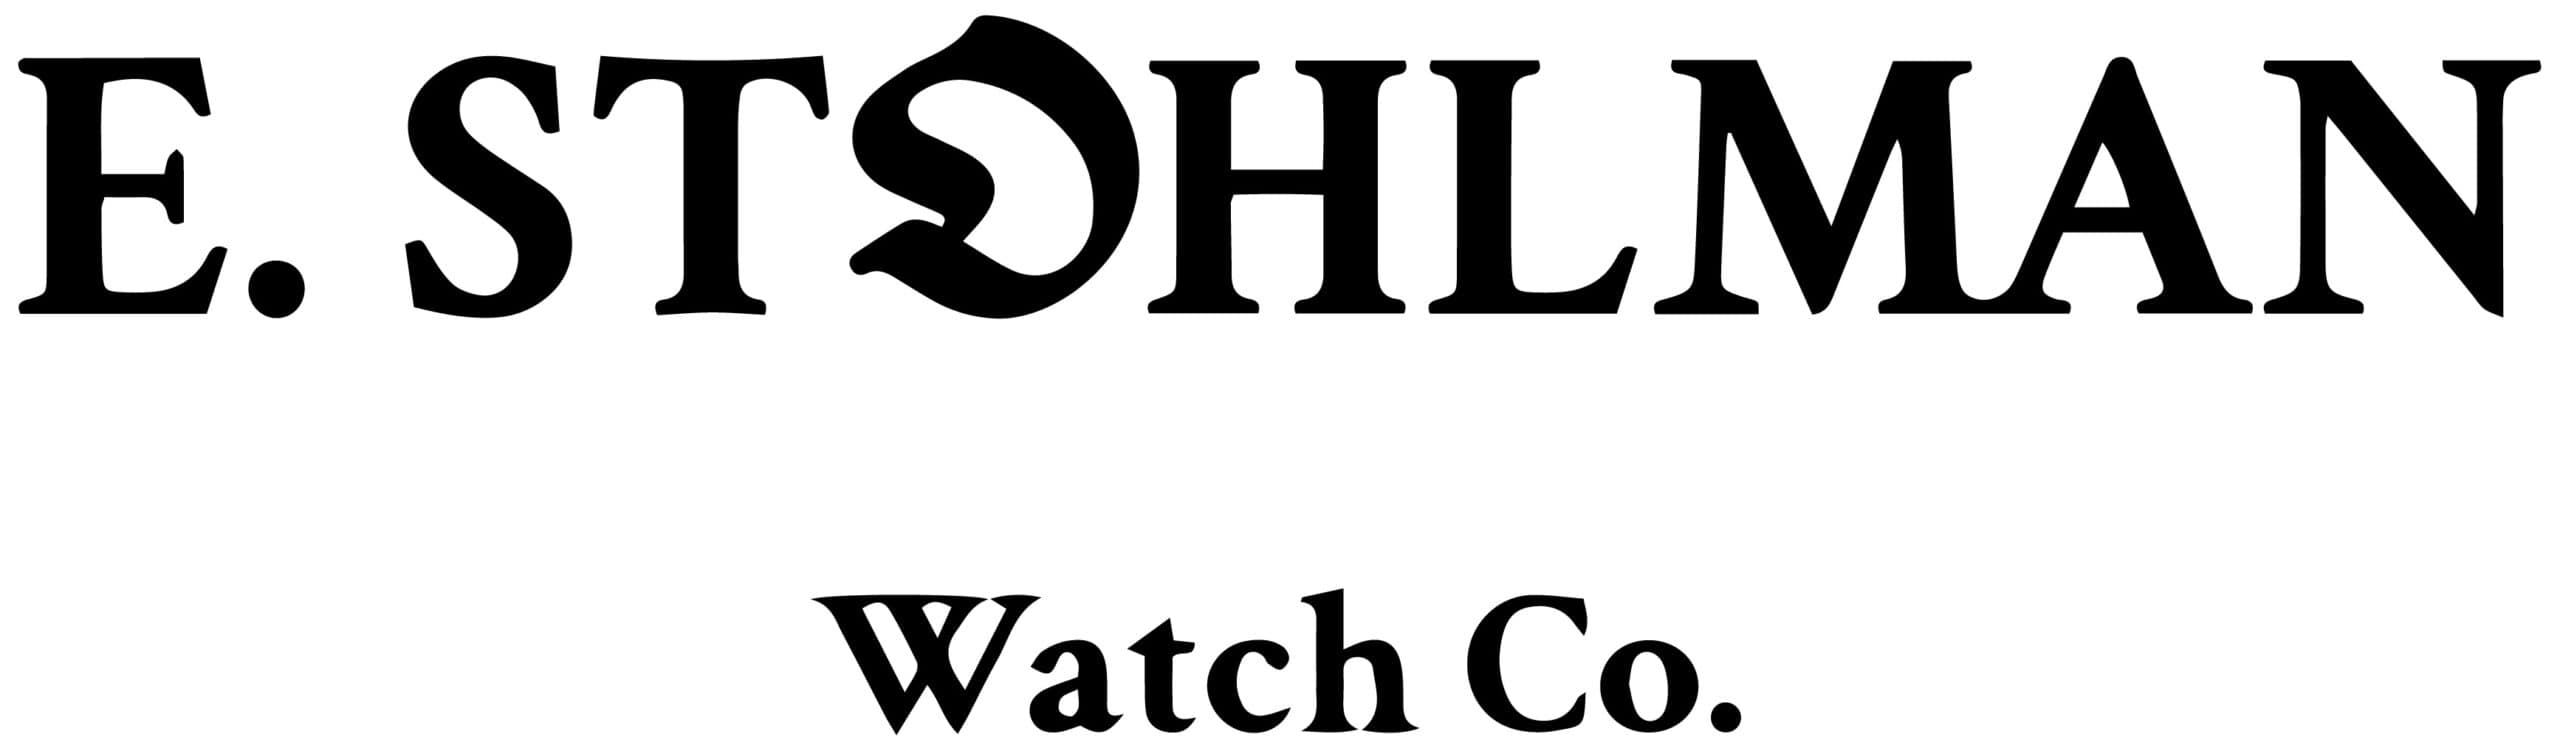 E. Stohlman Watch Company